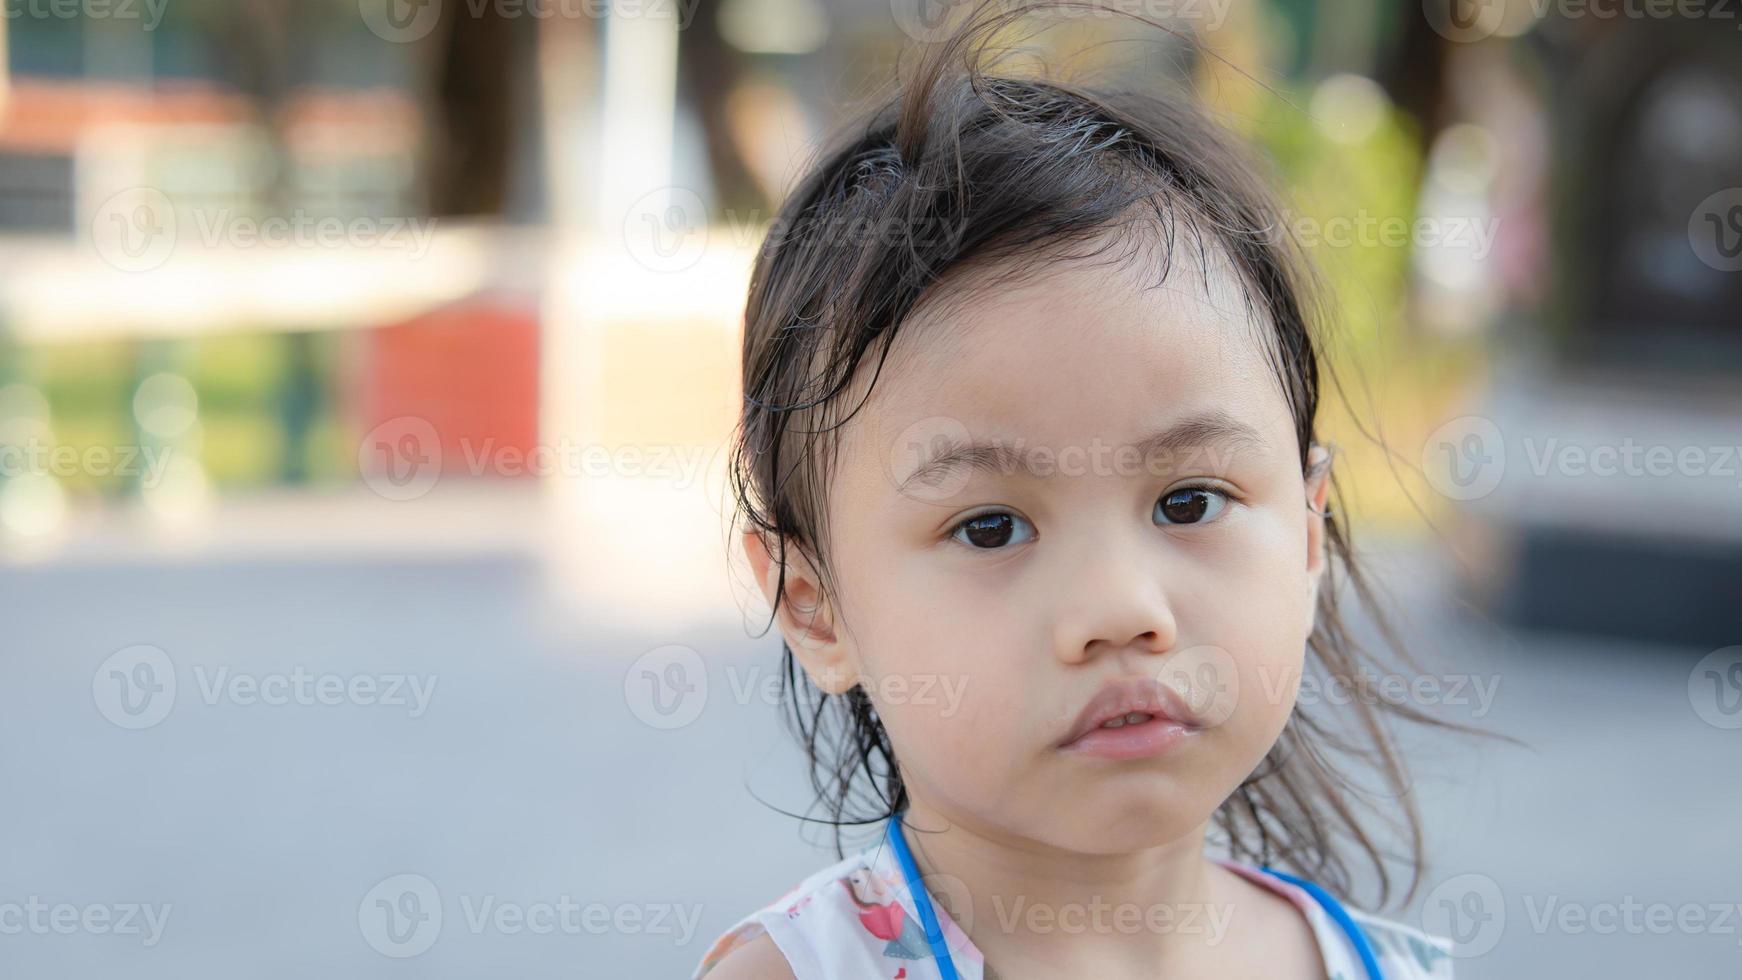 kopfschuss eines traurigen 4-jährigen süßen asiatischen mädchens, eines kleinen kleinkindes mit entzückendem kurzen haar, das ein frustriertes gesicht macht und eine kamera mit kopienraumhintergrund sieht. foto